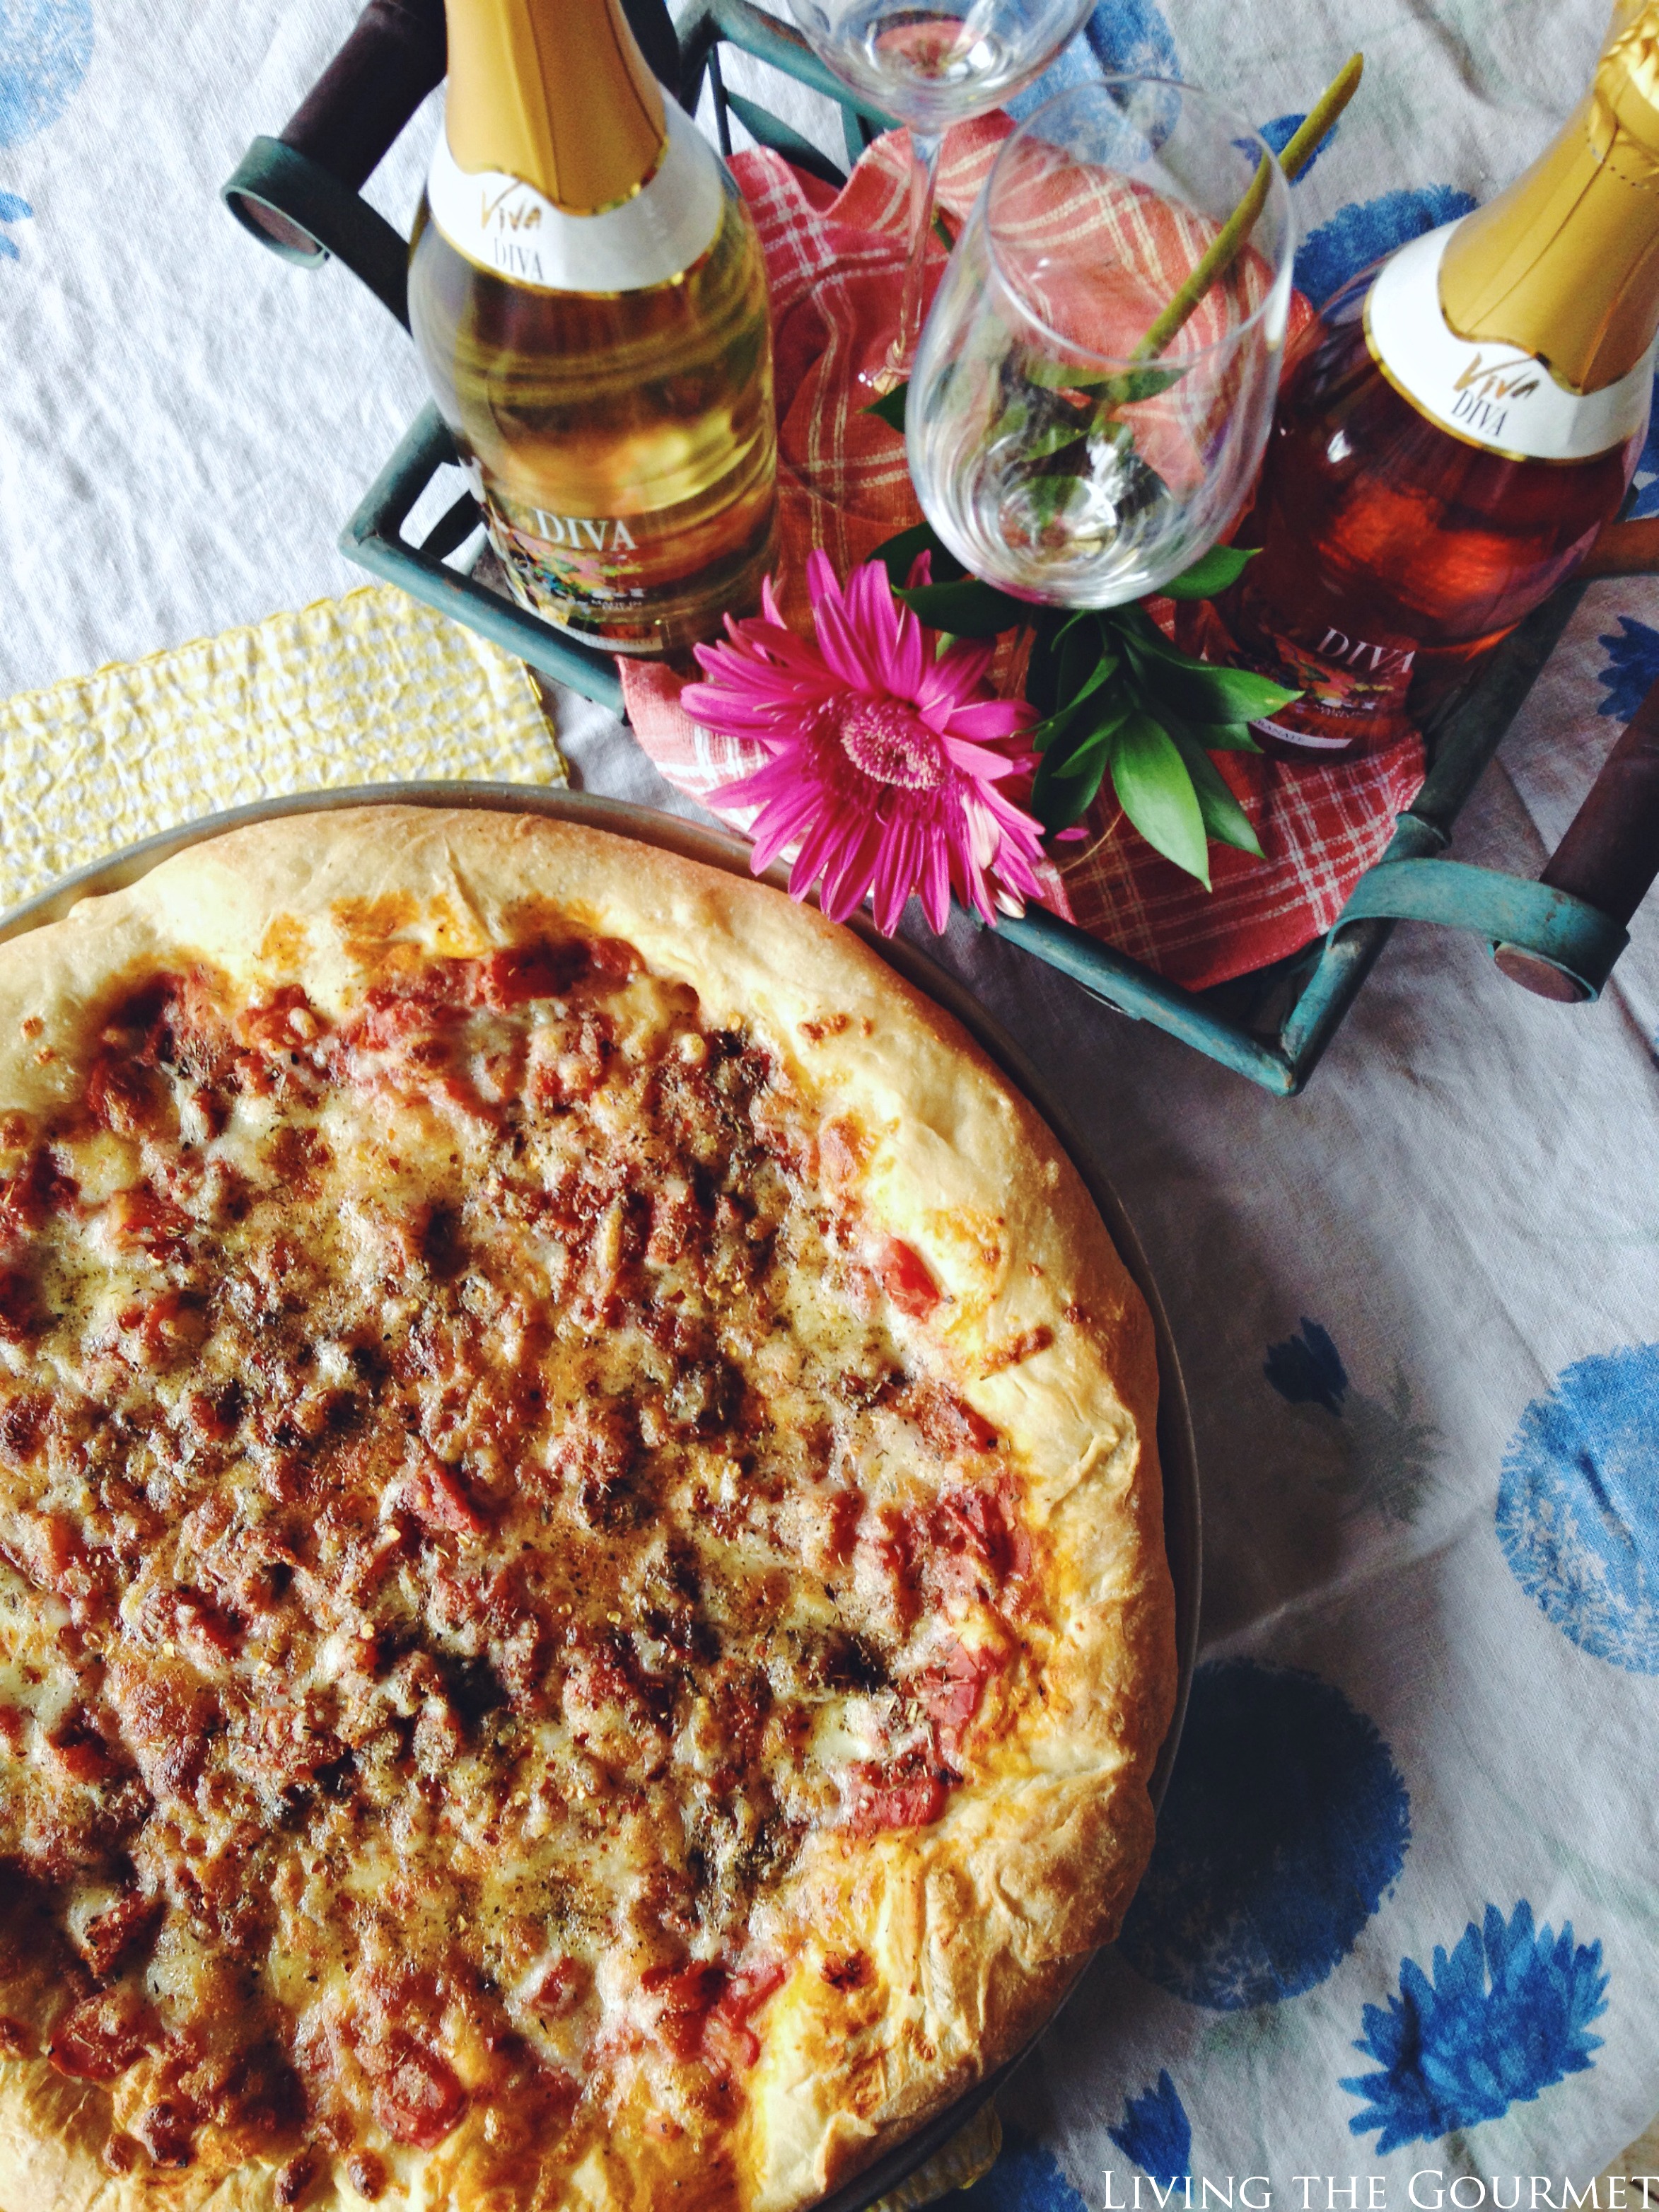 Living the Gourmet: Pizza & Viva Diva Sparkling Wine